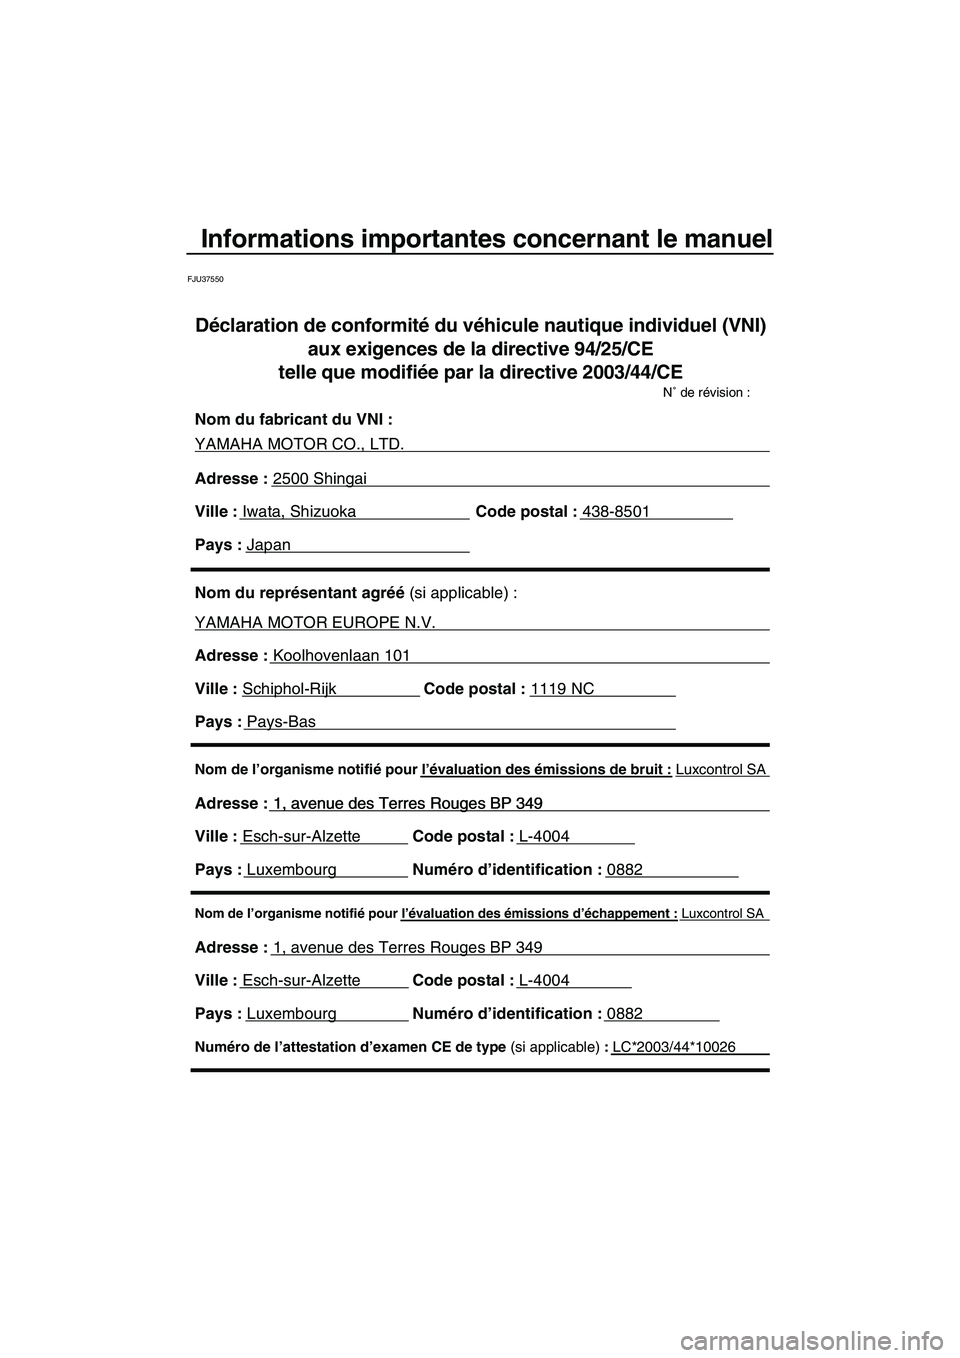 YAMAHA FZR SVHO 2009  Notices Demploi (in French) Informations importantes concernant le manuel
FJU37550
Nom de l’organisme notifié pour l’évaluation des émissions d’échappement : Luxcontrol SA
Adresse : 1, avenue des Terres Rouges BP 349 
